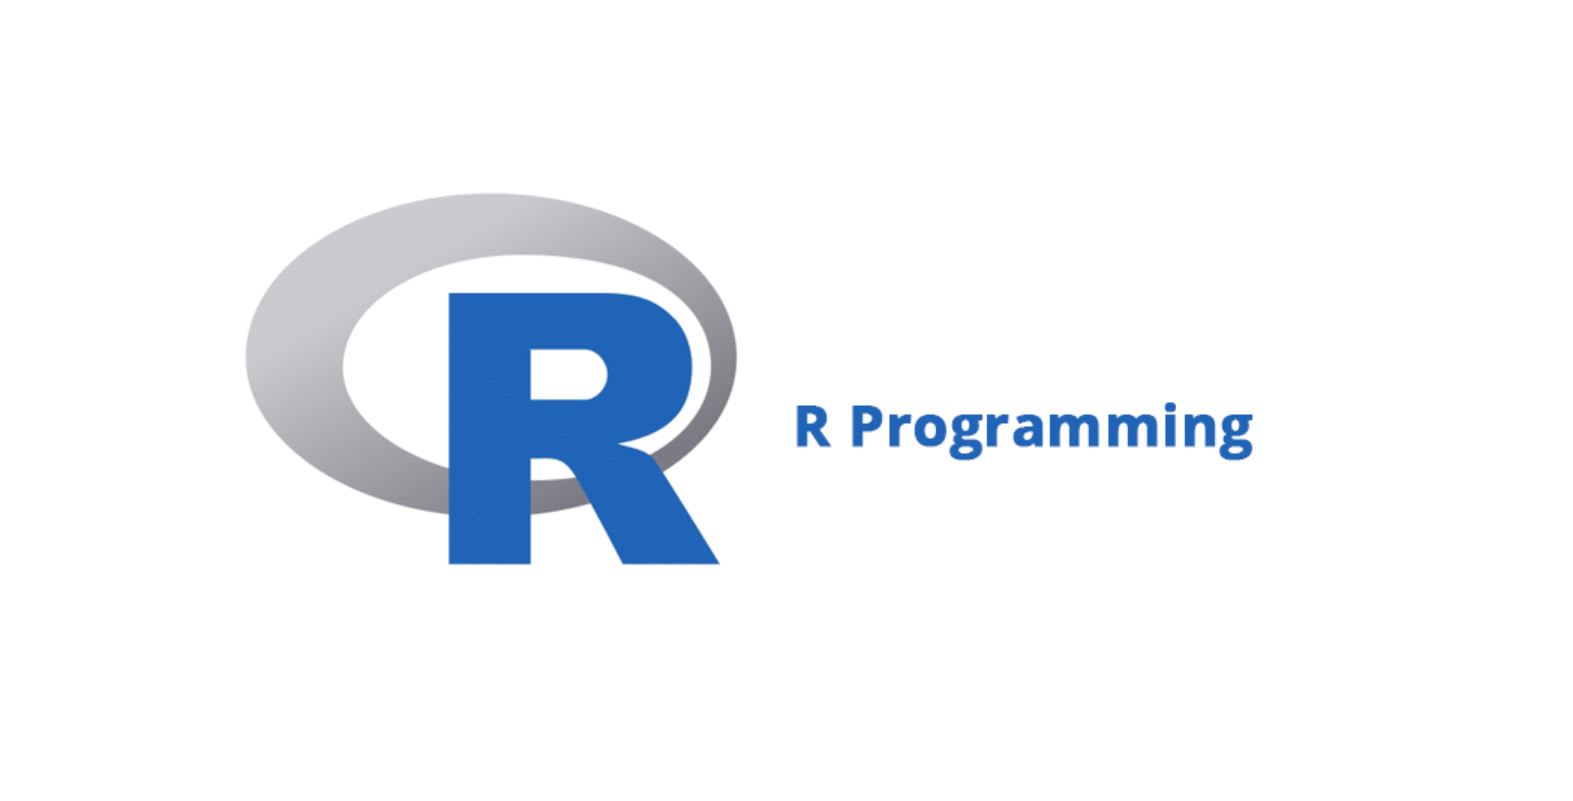 r programming language download windows